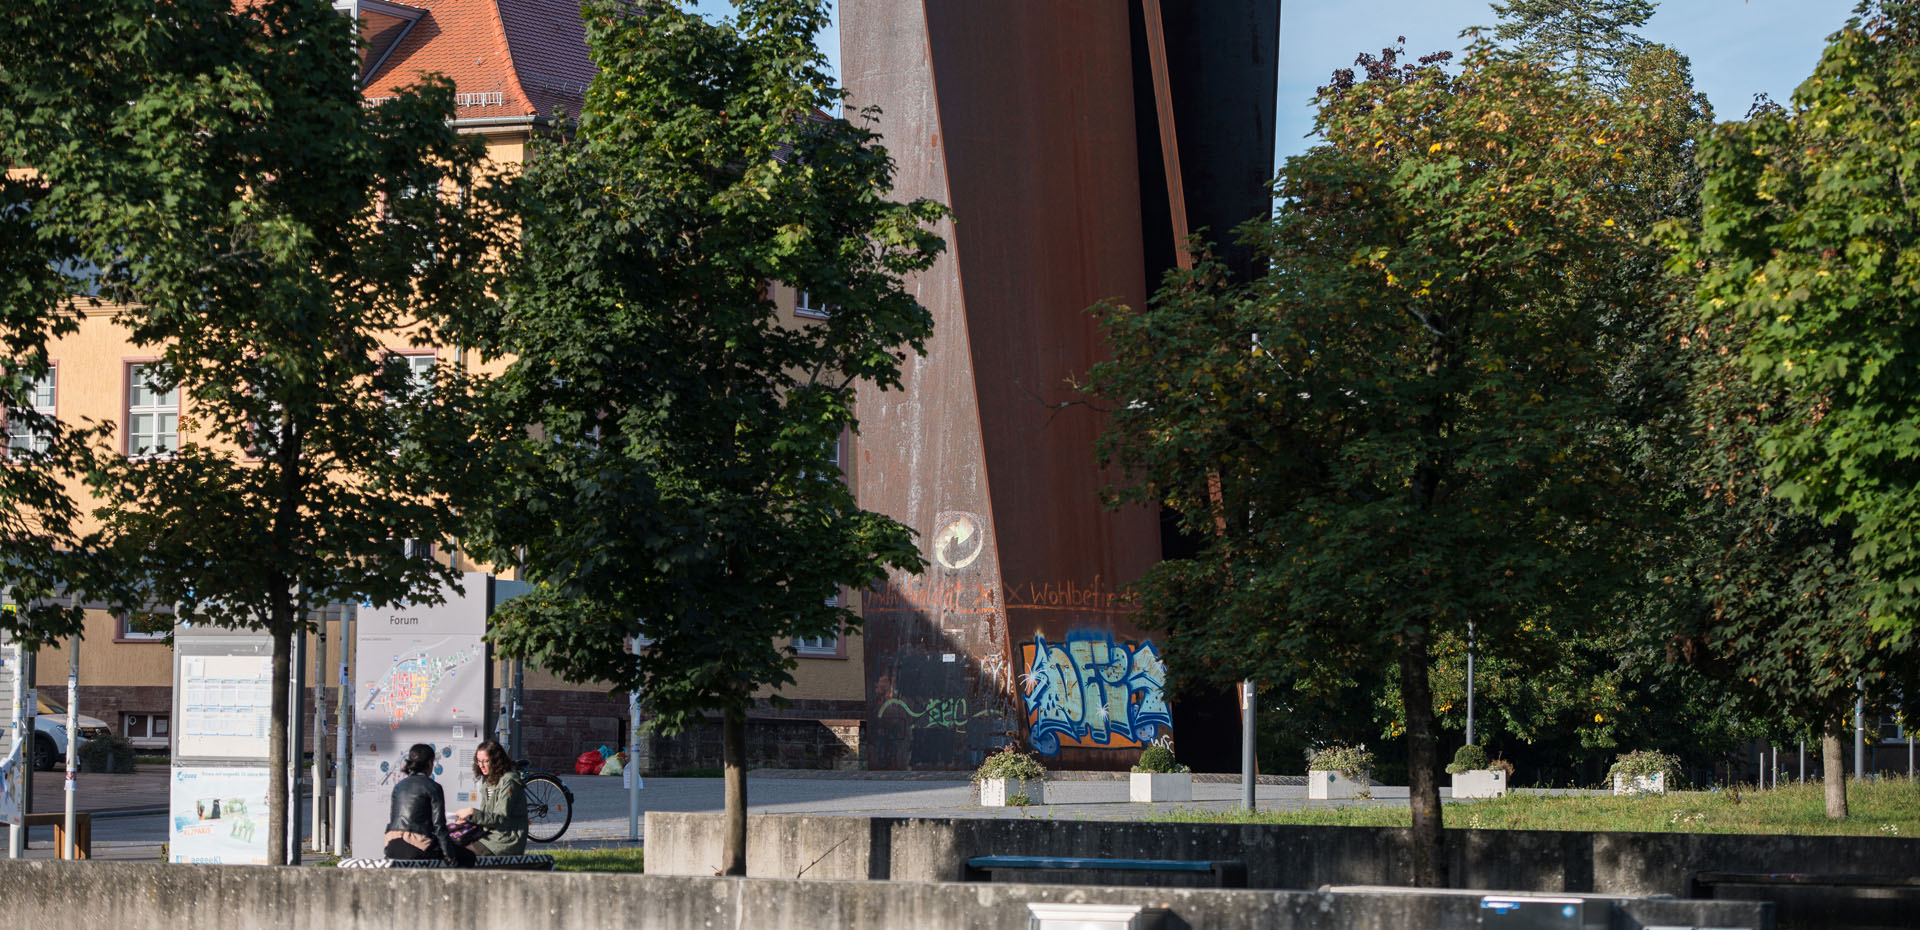 Blick durch Bäume auf die Stahlskulptur Torque von Richard Serra auf dem Campus der Universität des Saarlandes